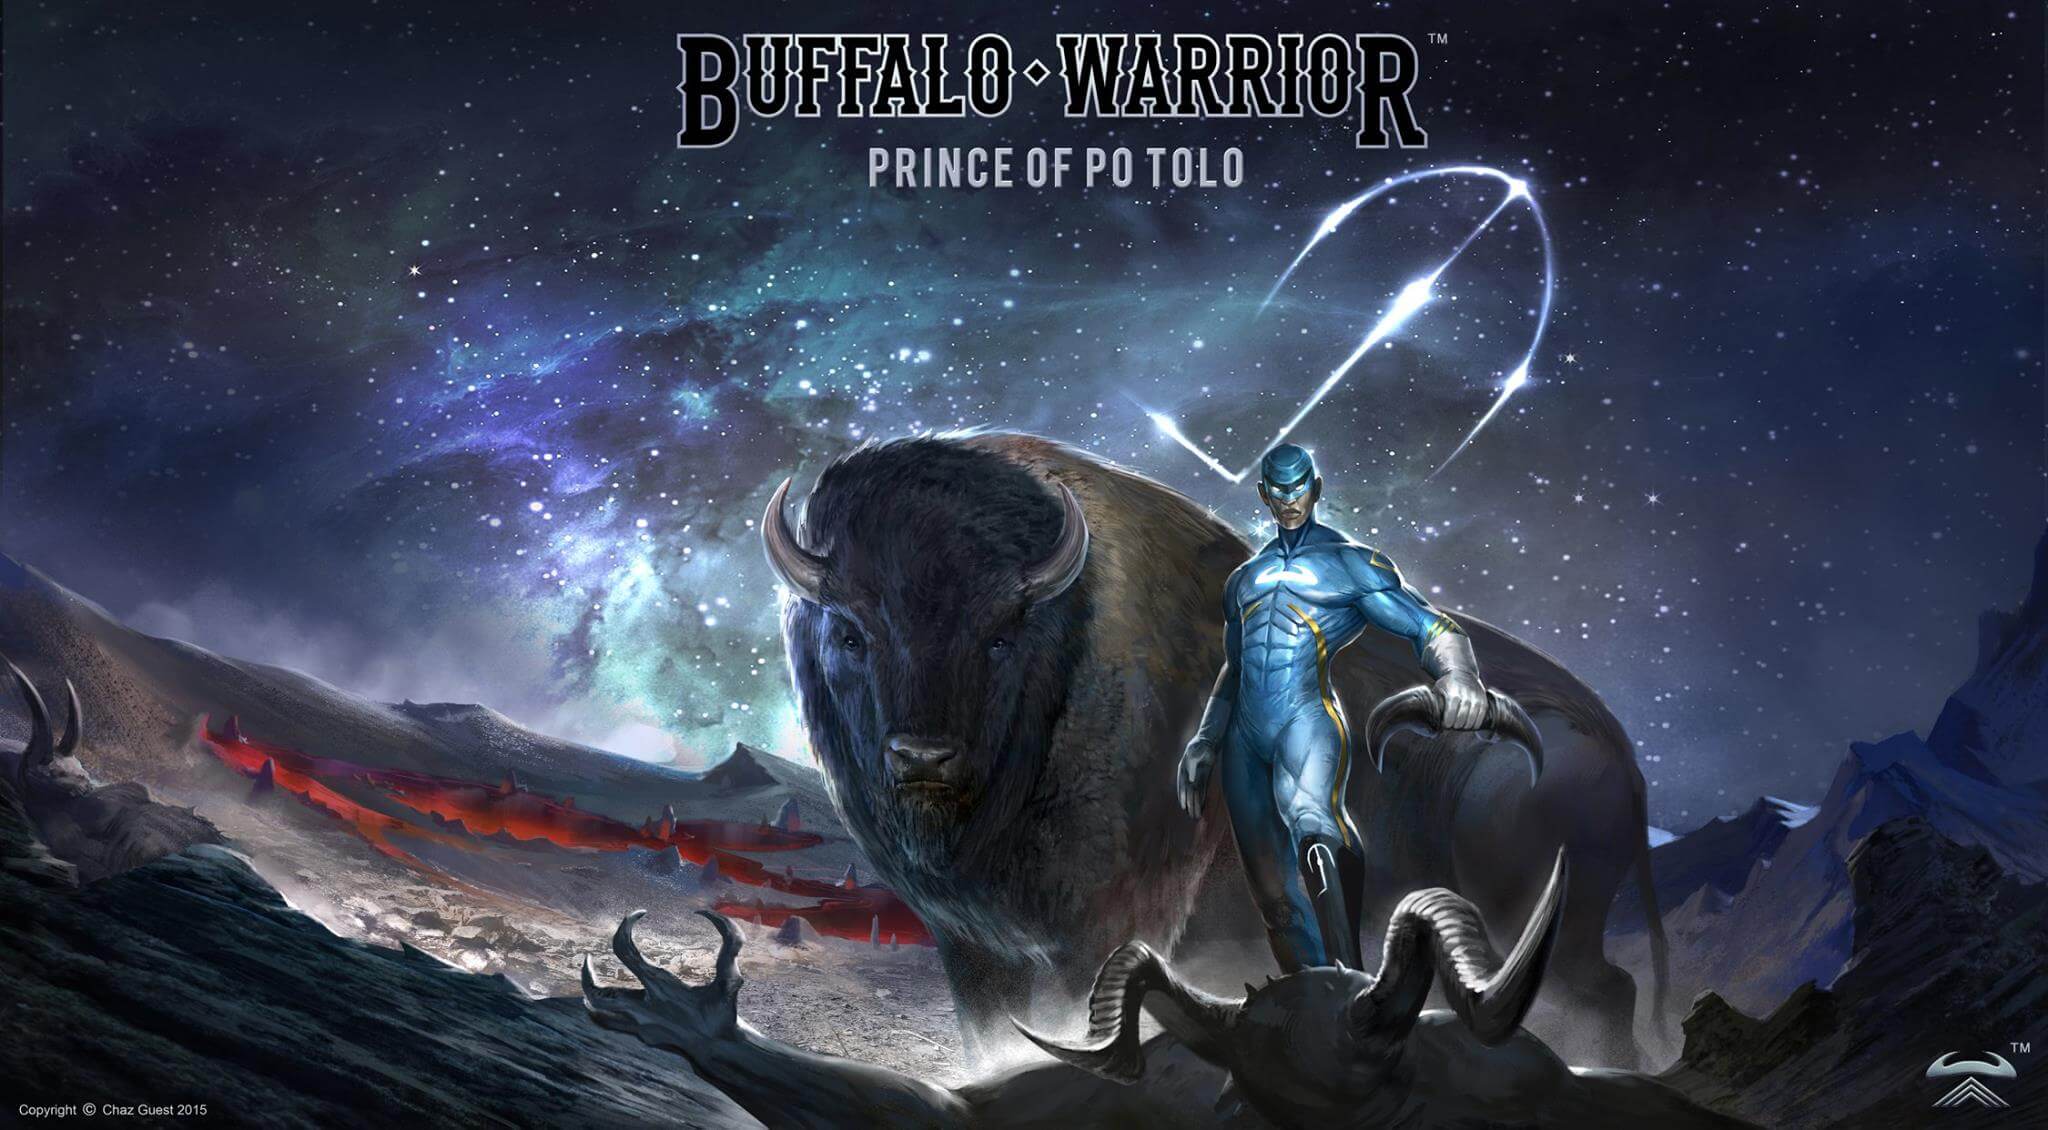 Buffalo Warrior artwork by Chaz Guest